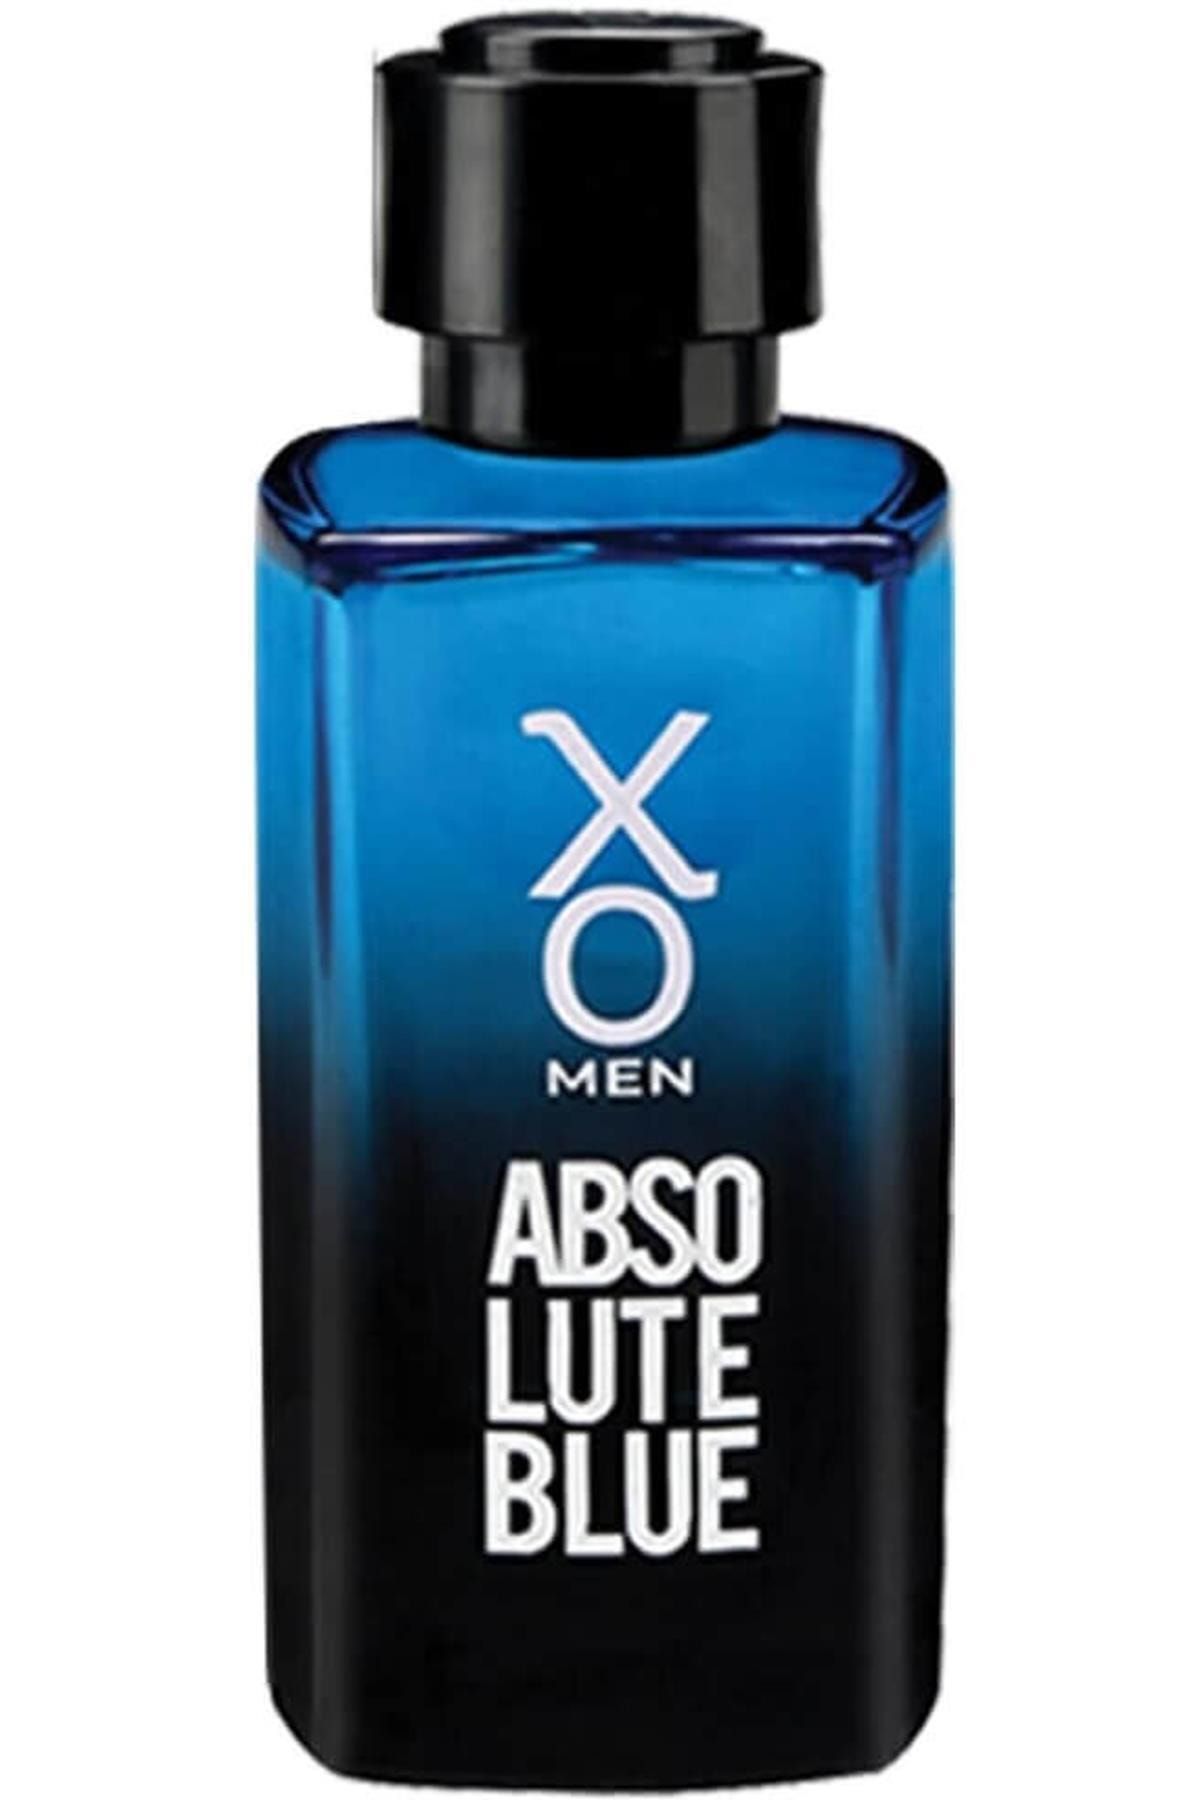 Xo Marka: Absolute Blue Edt Erkek Parfüm 100 Ml Kategori: Deodorant